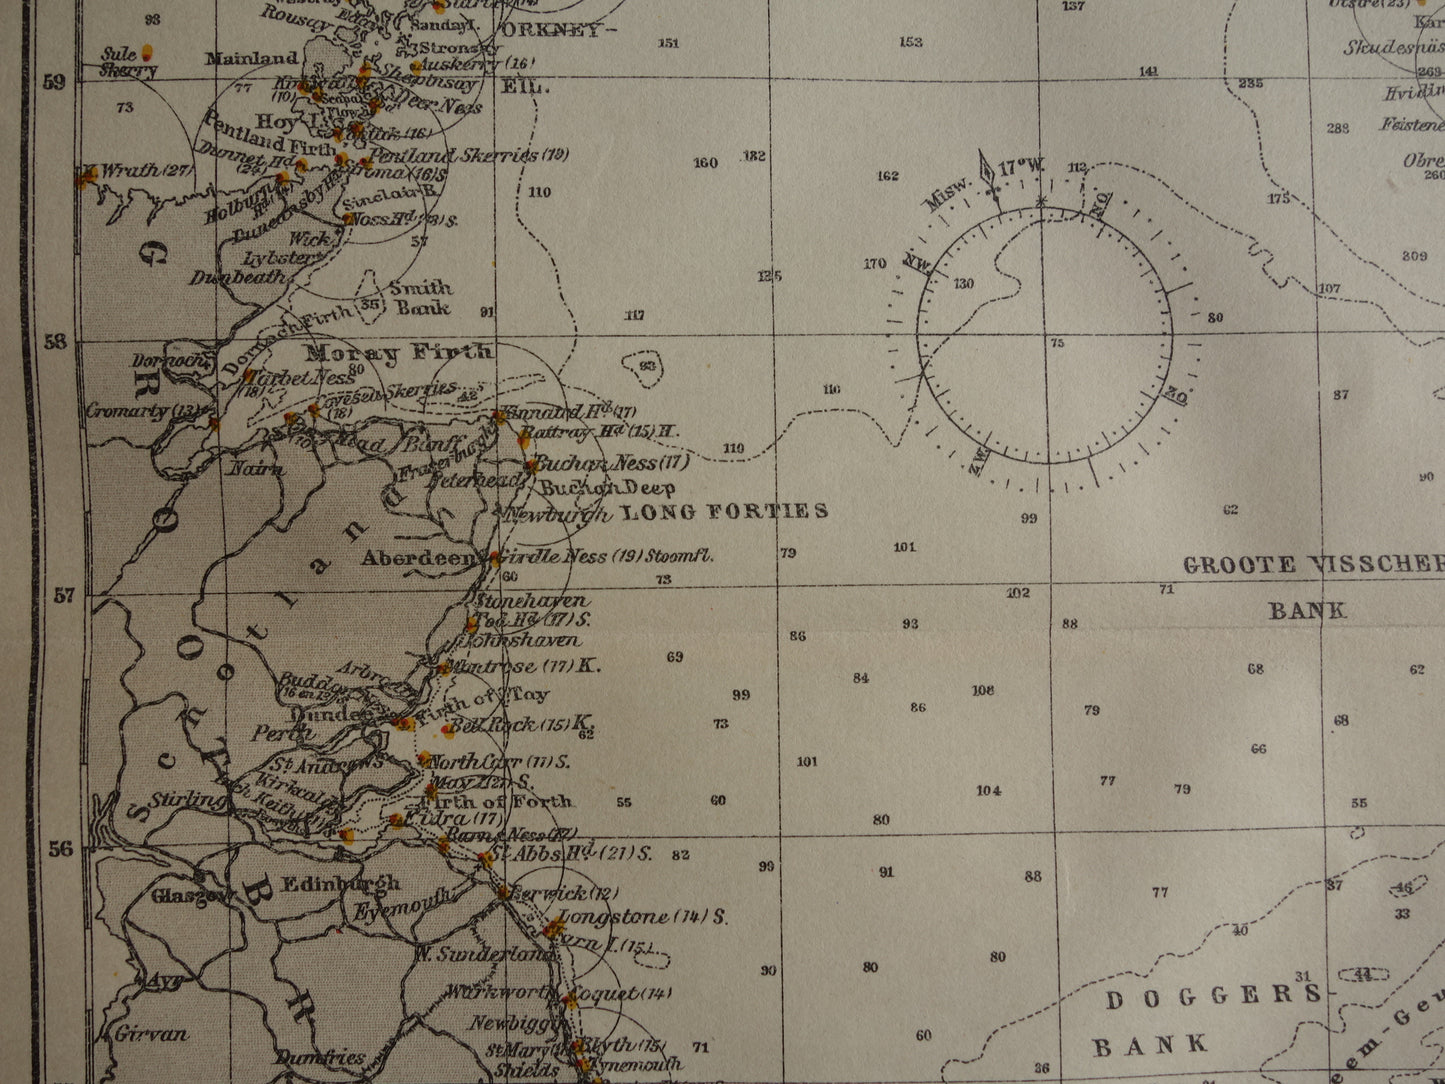 NOORDZEE oude zeekaart uit 1920 originele antieke Nederlandse kaart van de Noordzee